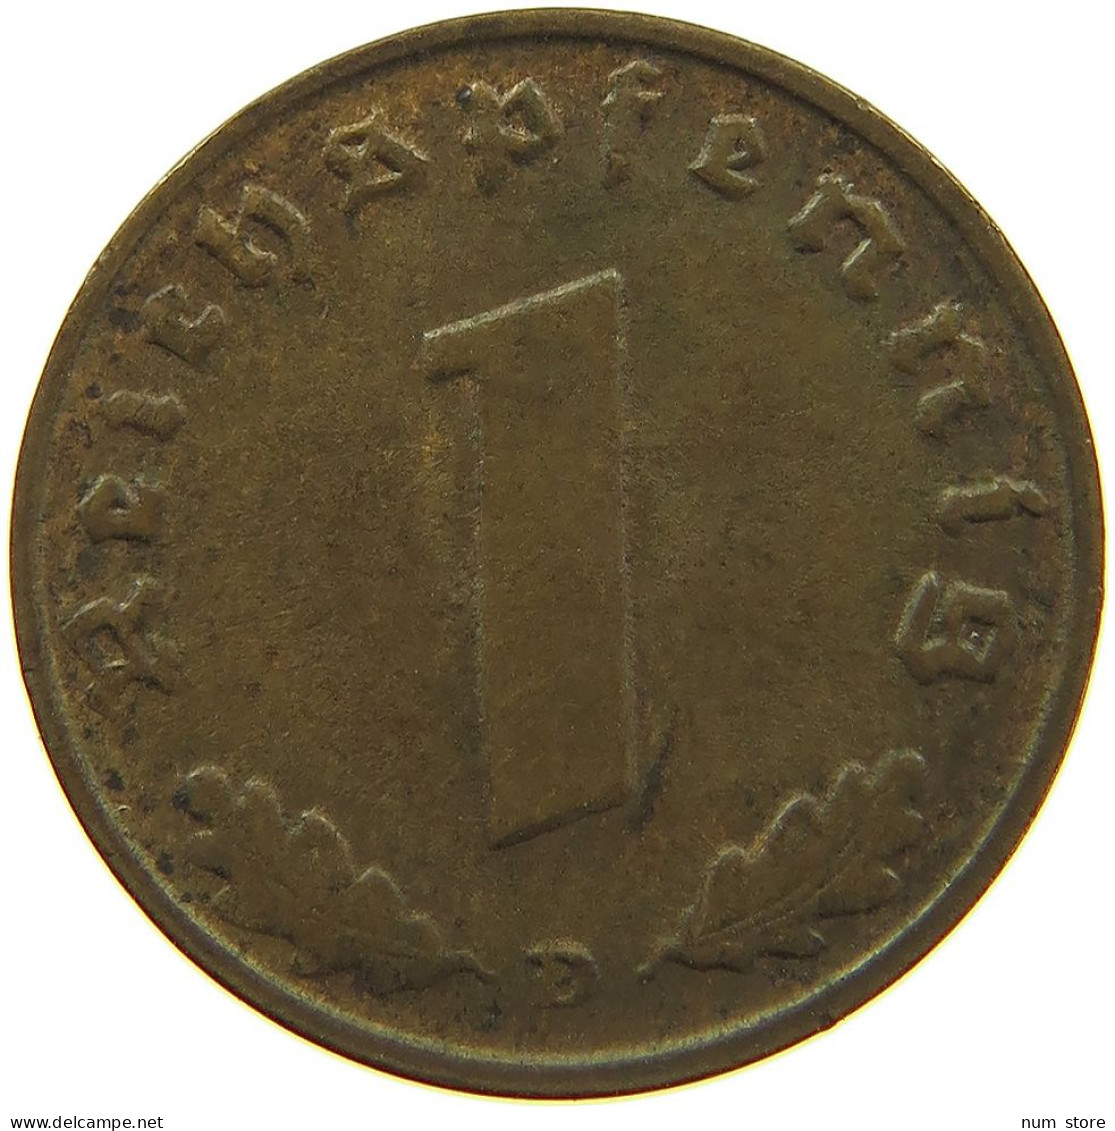 GERMANY 1 REICHSPFENNIG 1939 D5 #s096 0137 - 1 Reichspfennig